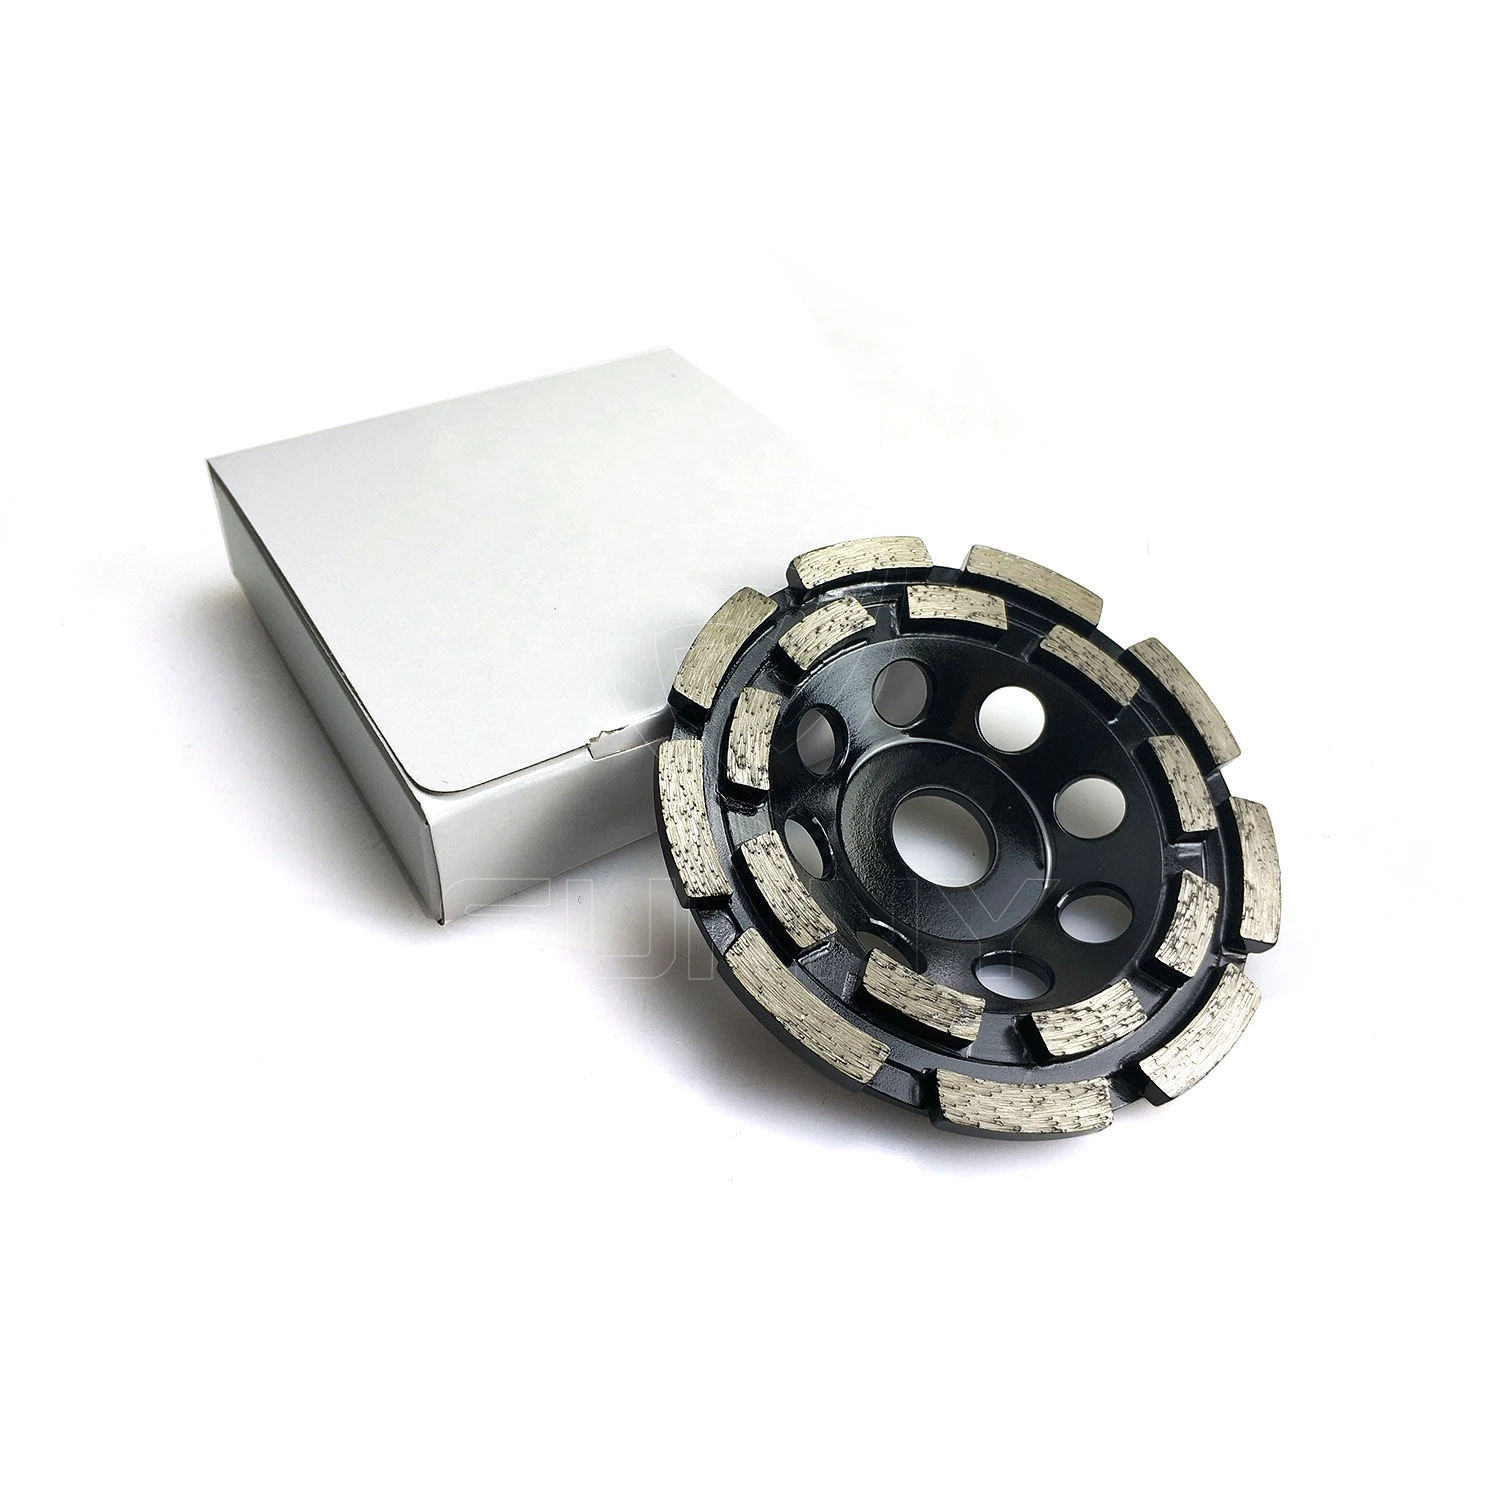 Herramientas de Sol 5 Pulgadas 125 mm de calidad Premium Diamond disco abrasivo de molienda de cemento de la rueda de la Copa Herramienta para la molienda de la superficie del suelo